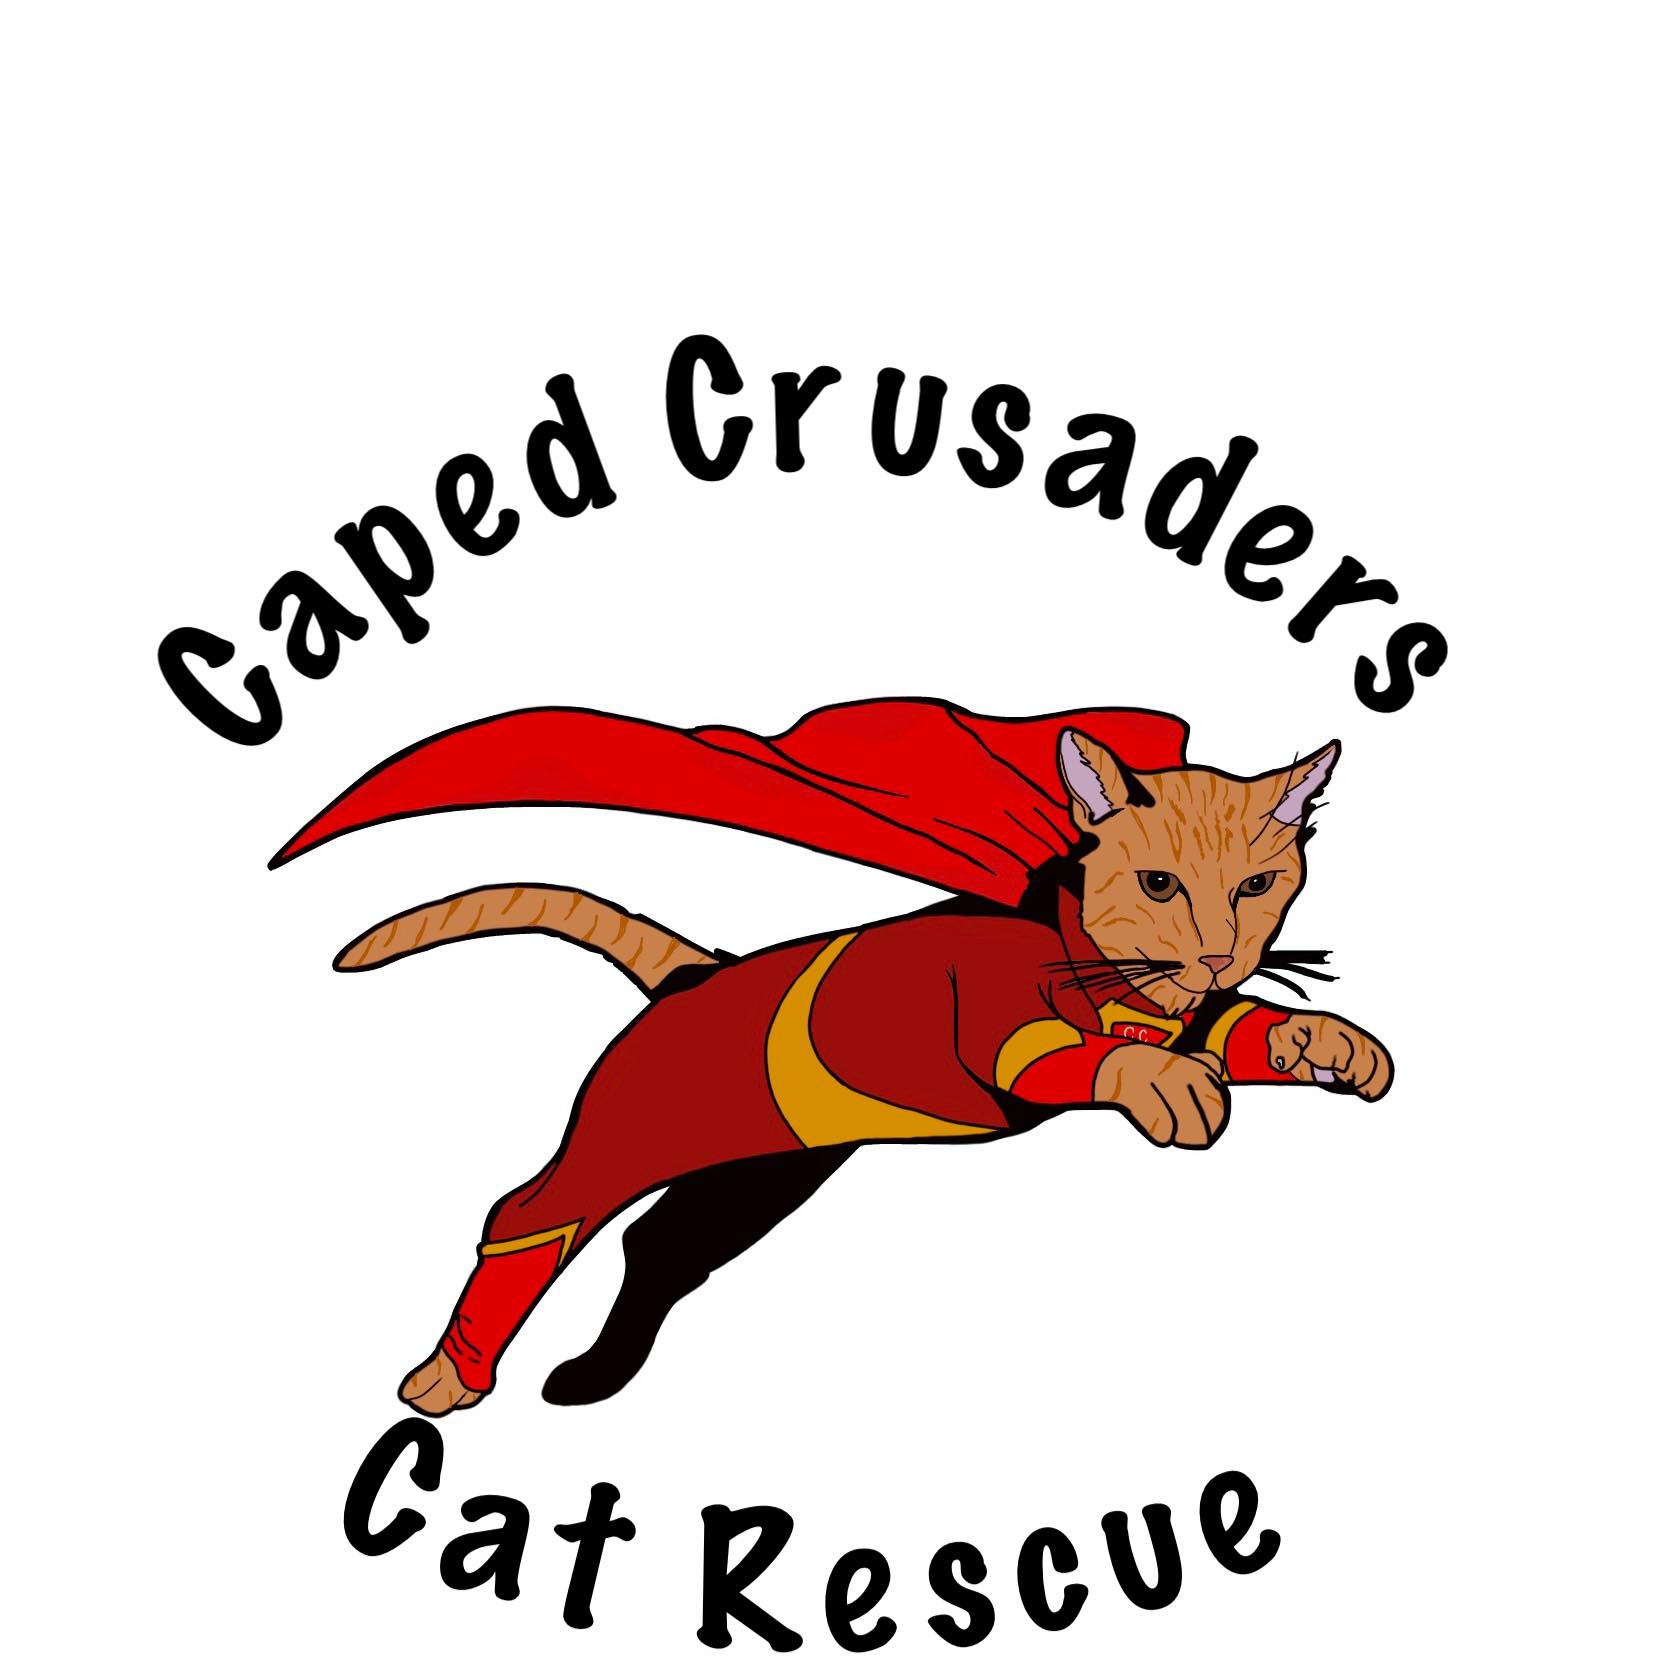 Caped Crusaders Cat Rescue